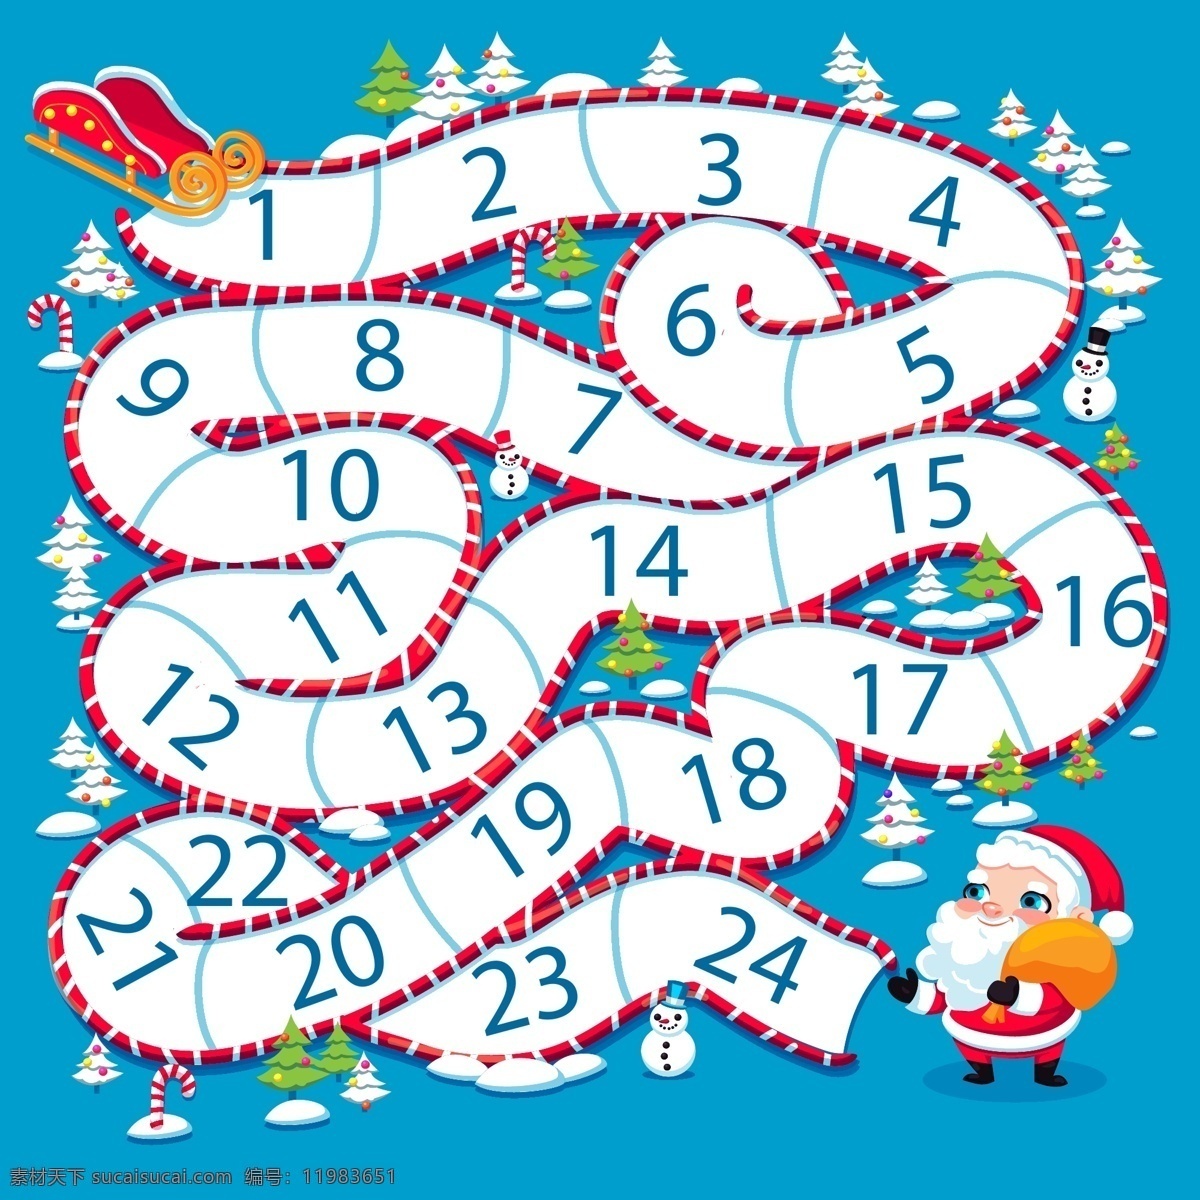 创意 圣诞老人 迷宫 月历 矢量图 雪人 雪橇 圣诞树 雪花 圣诞节 圣诞月 包装设计